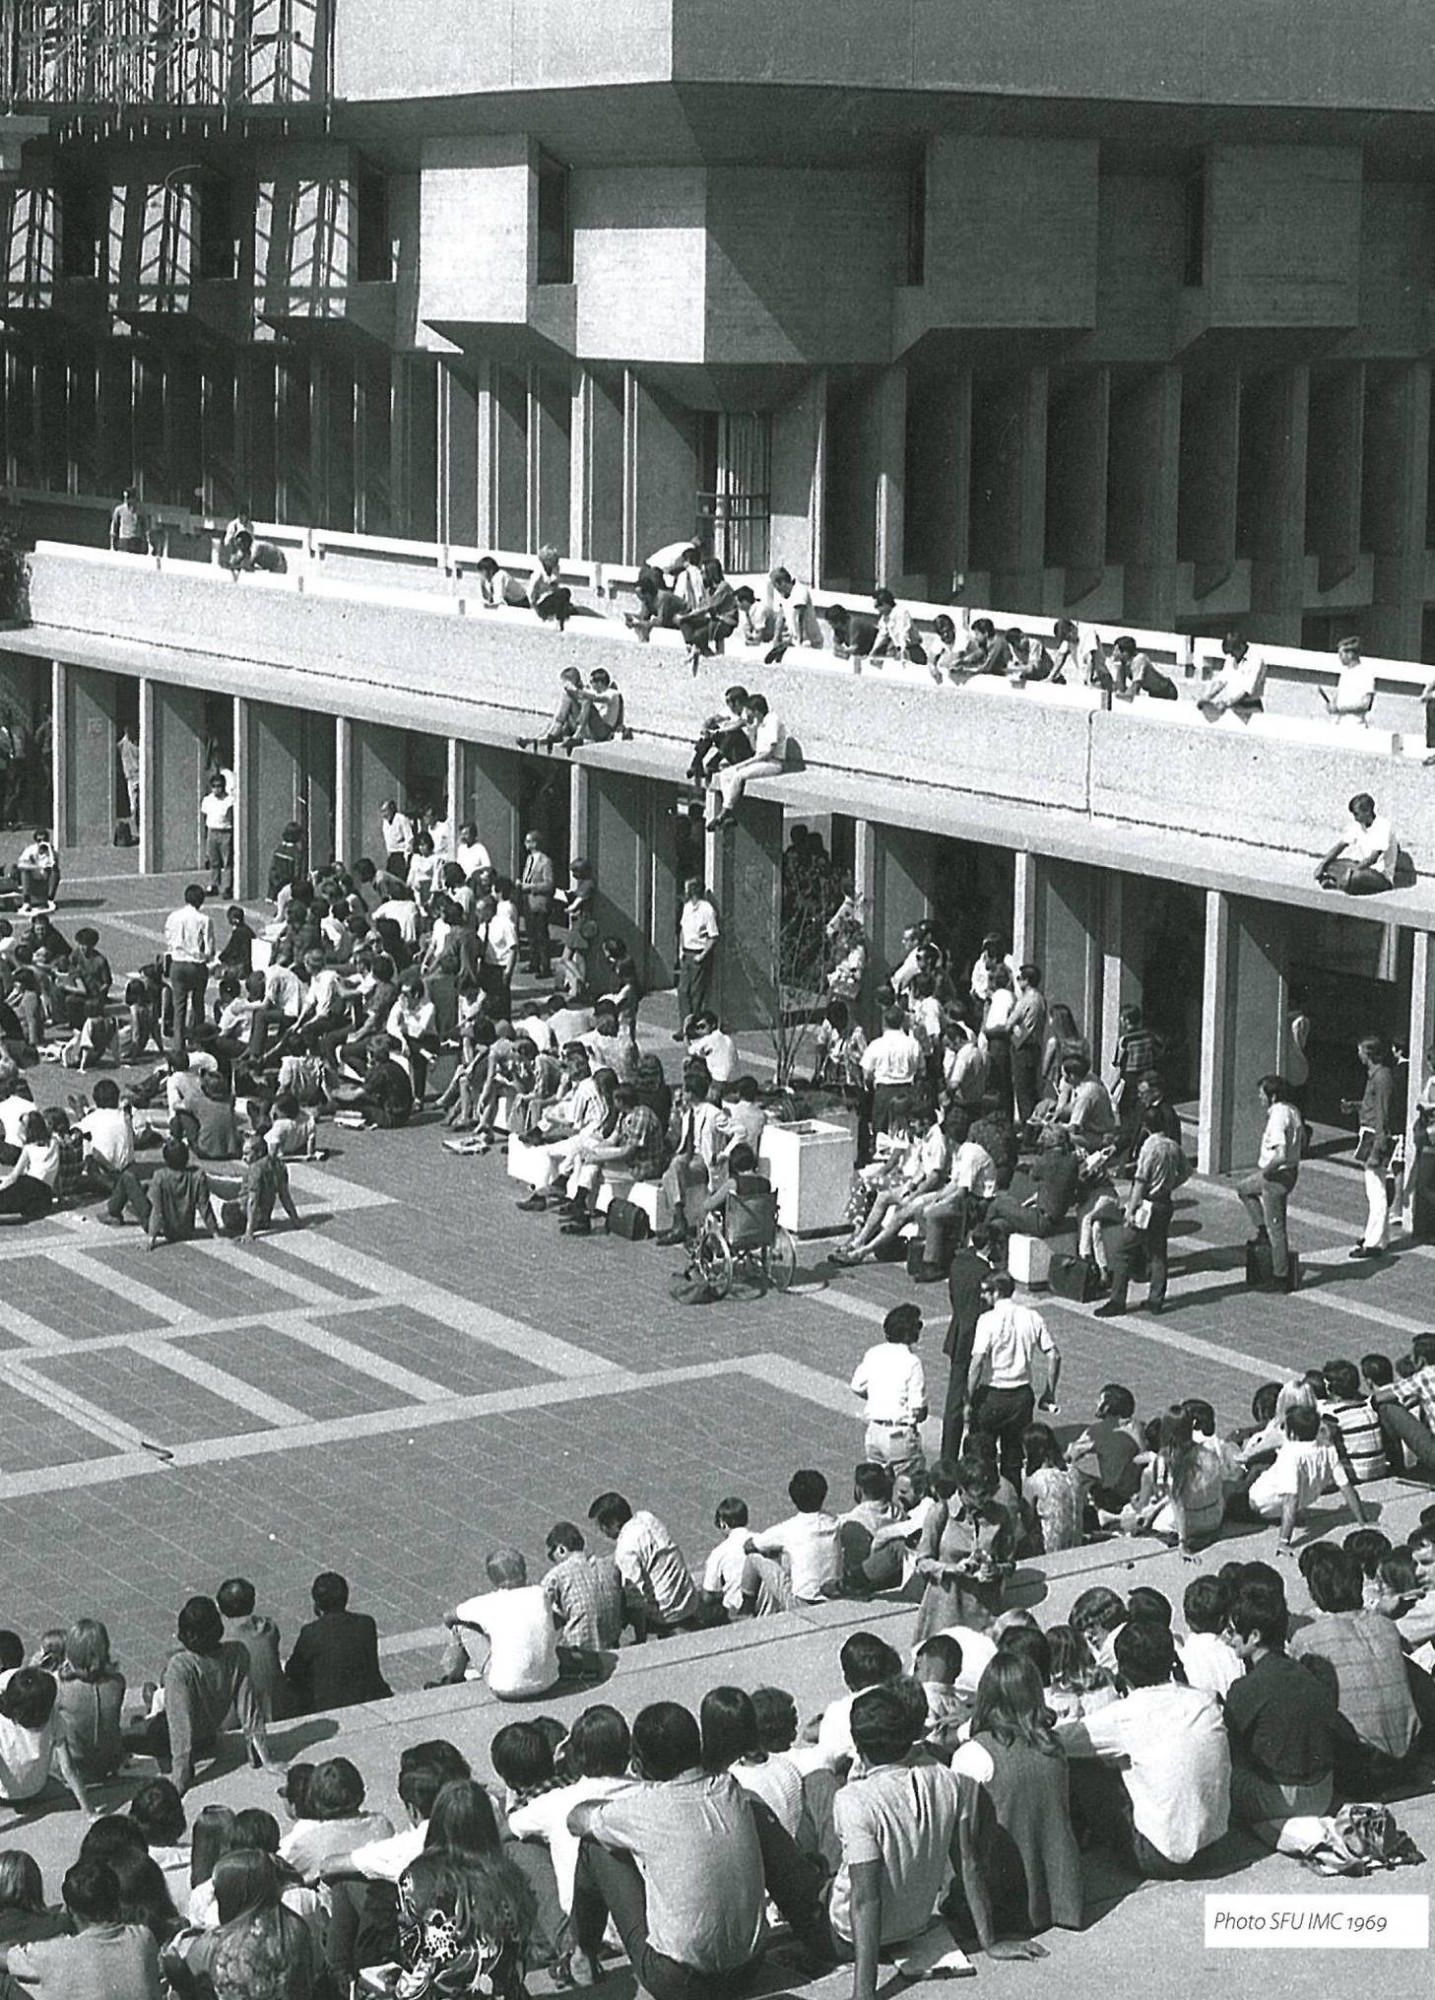 SFU in 1969